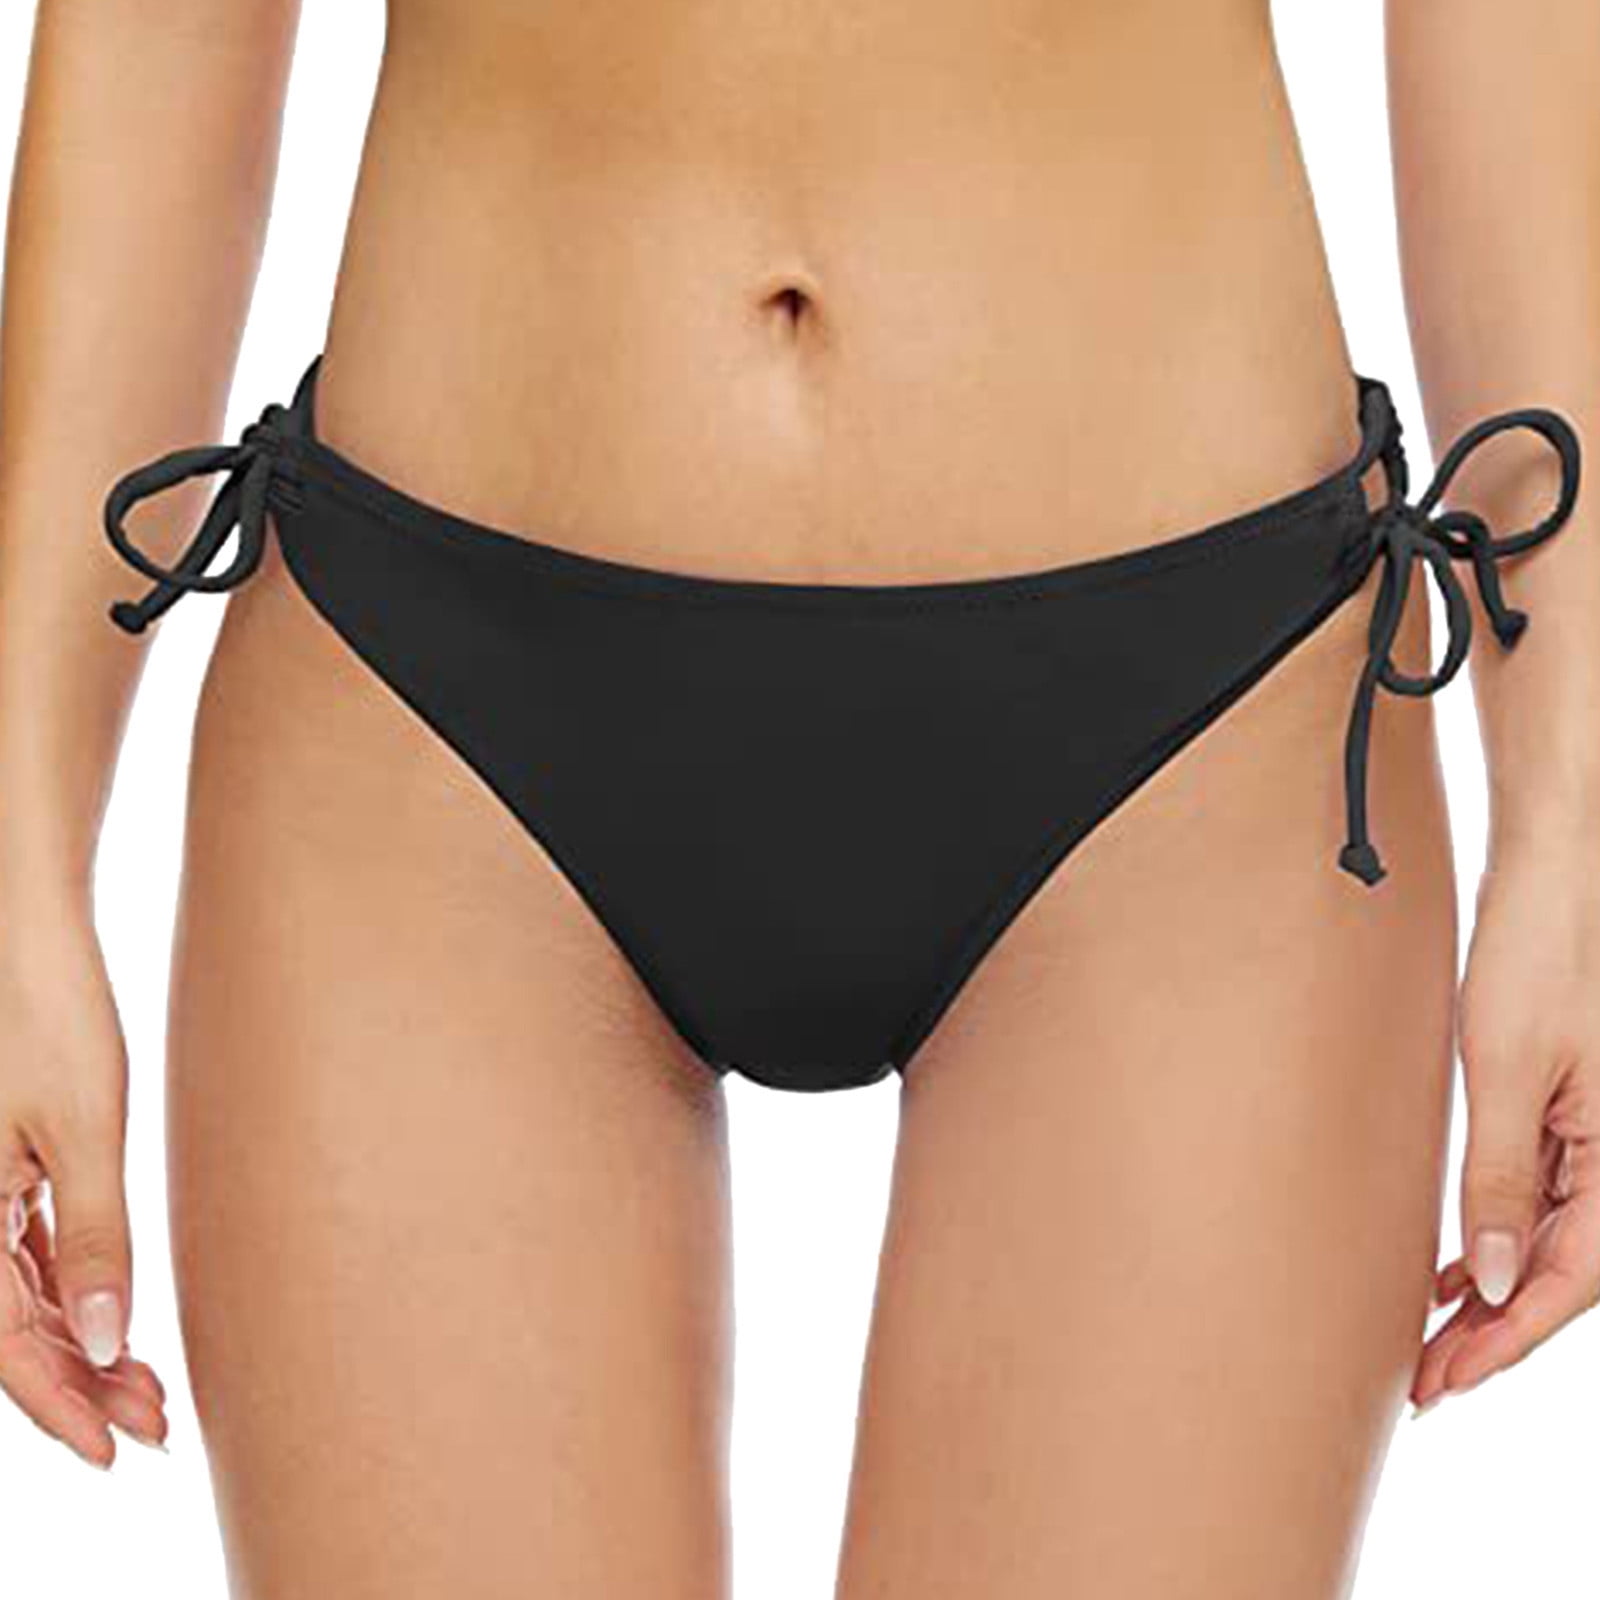 NKOOGH Jr Swimsuits for Teen Girls Mens Swim Pants Loose Women Vintage  Print Low Waist Brazilian Bikini Bottom Swimwear Briefs Beachwear Brazilian